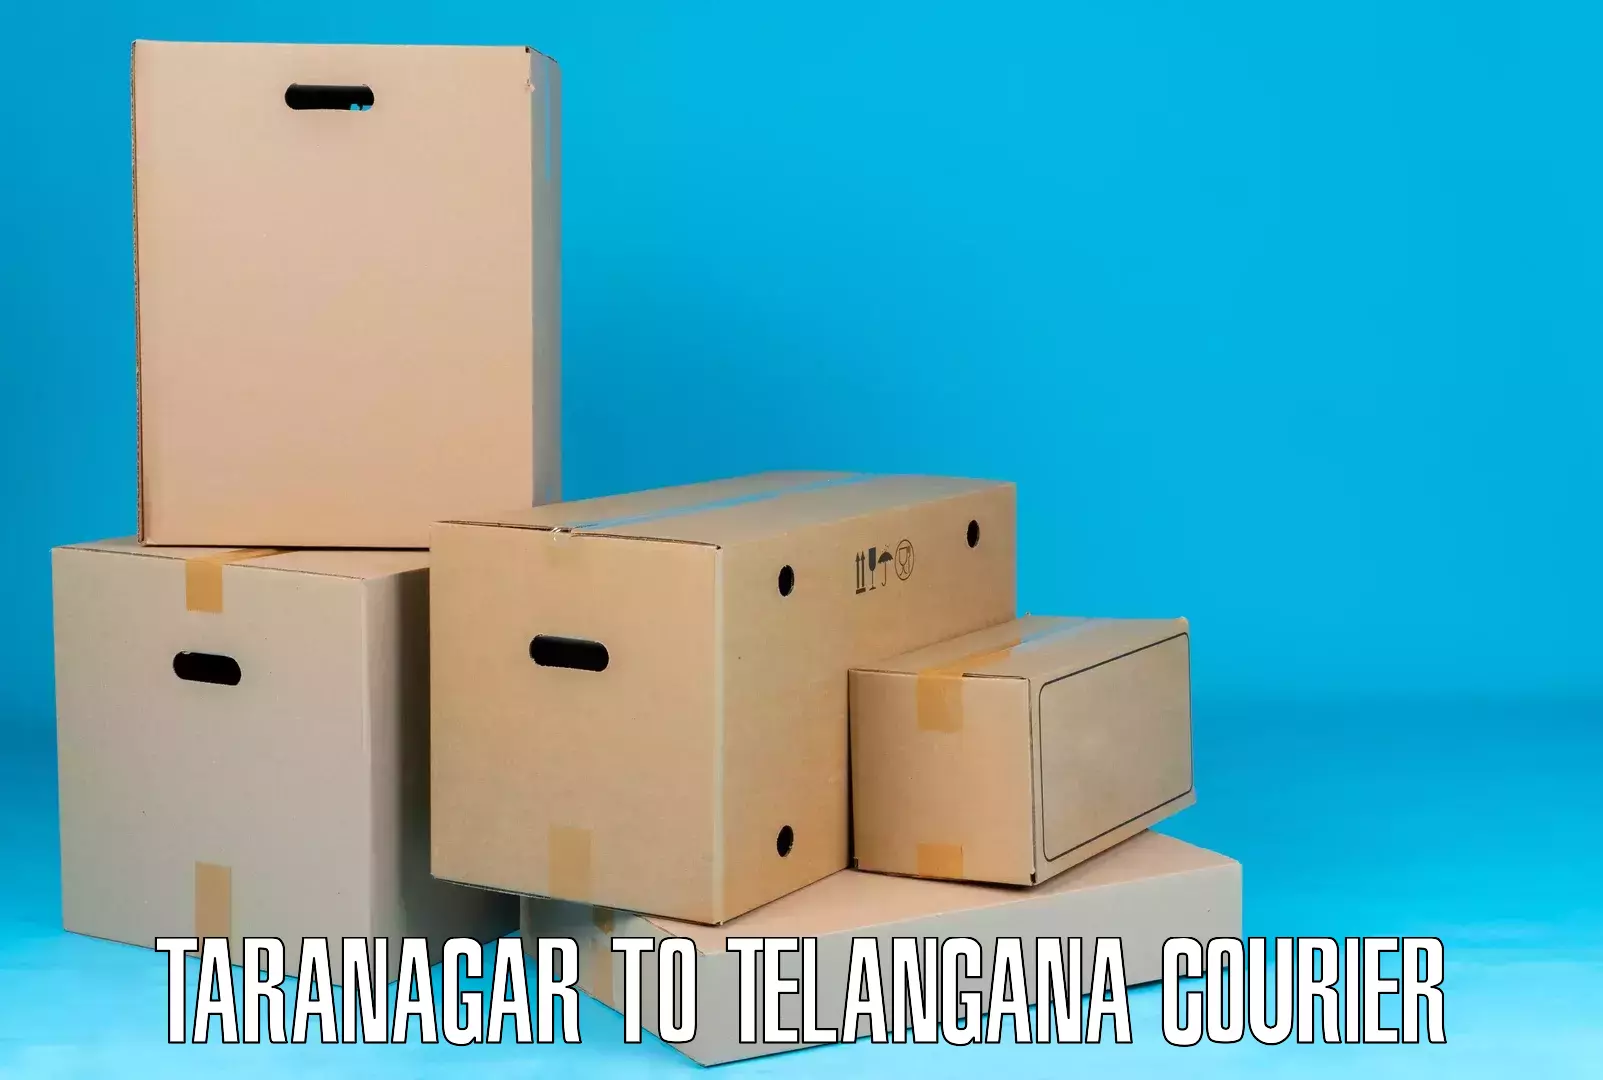 Local delivery service Taranagar to Alair